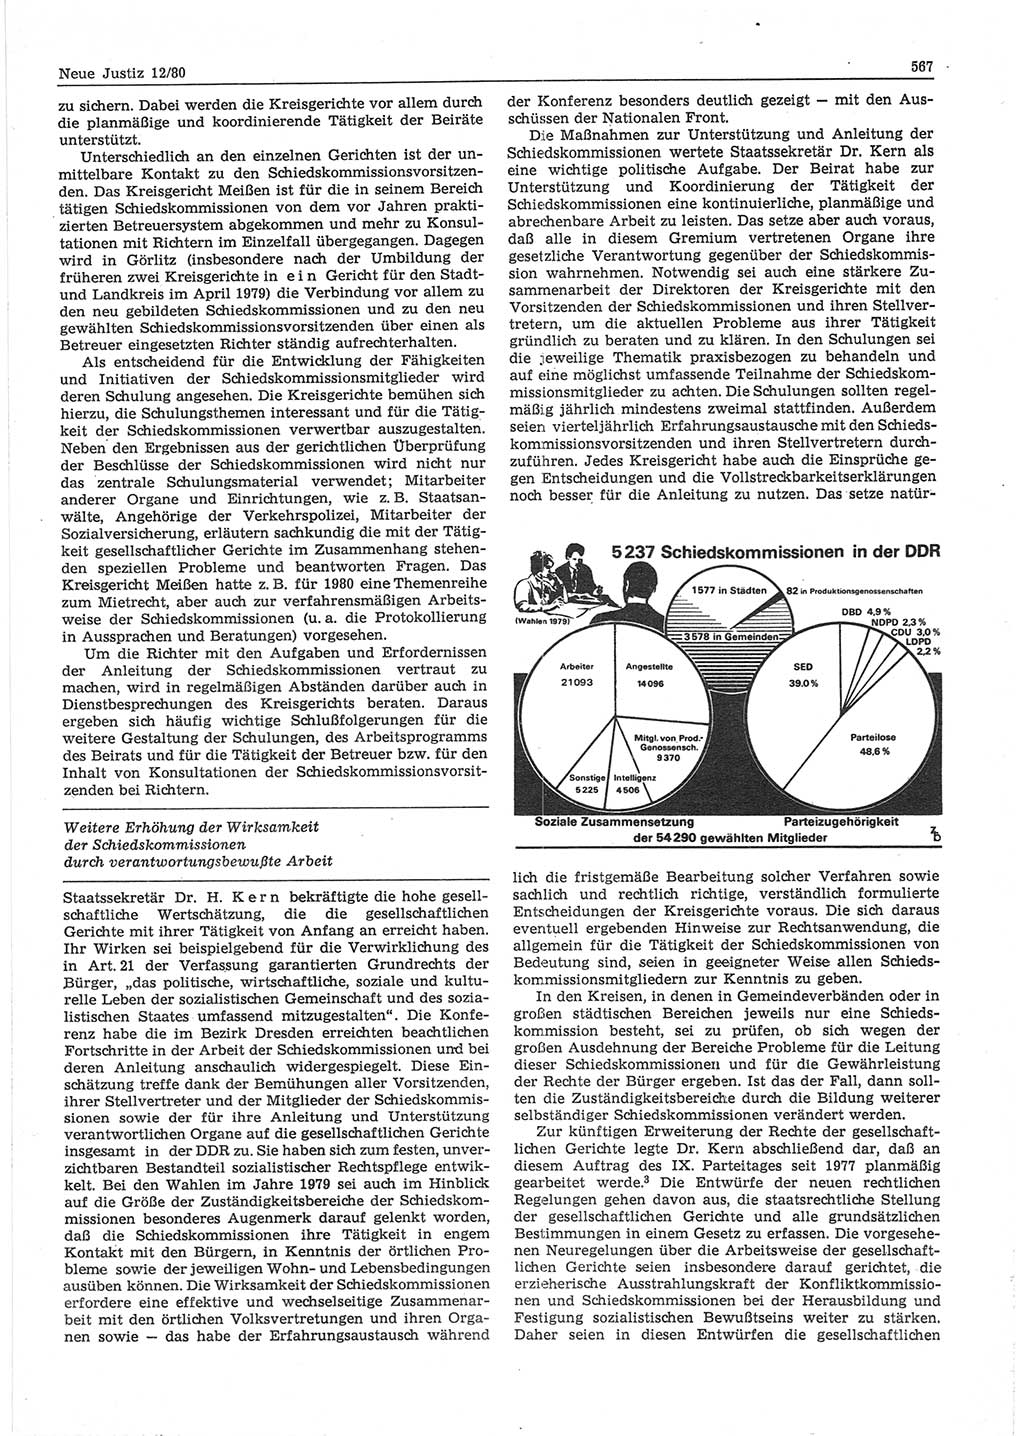 Neue Justiz (NJ), Zeitschrift für sozialistisches Recht und Gesetzlichkeit [Deutsche Demokratische Republik (DDR)], 34. Jahrgang 1980, Seite 567 (NJ DDR 1980, S. 567)